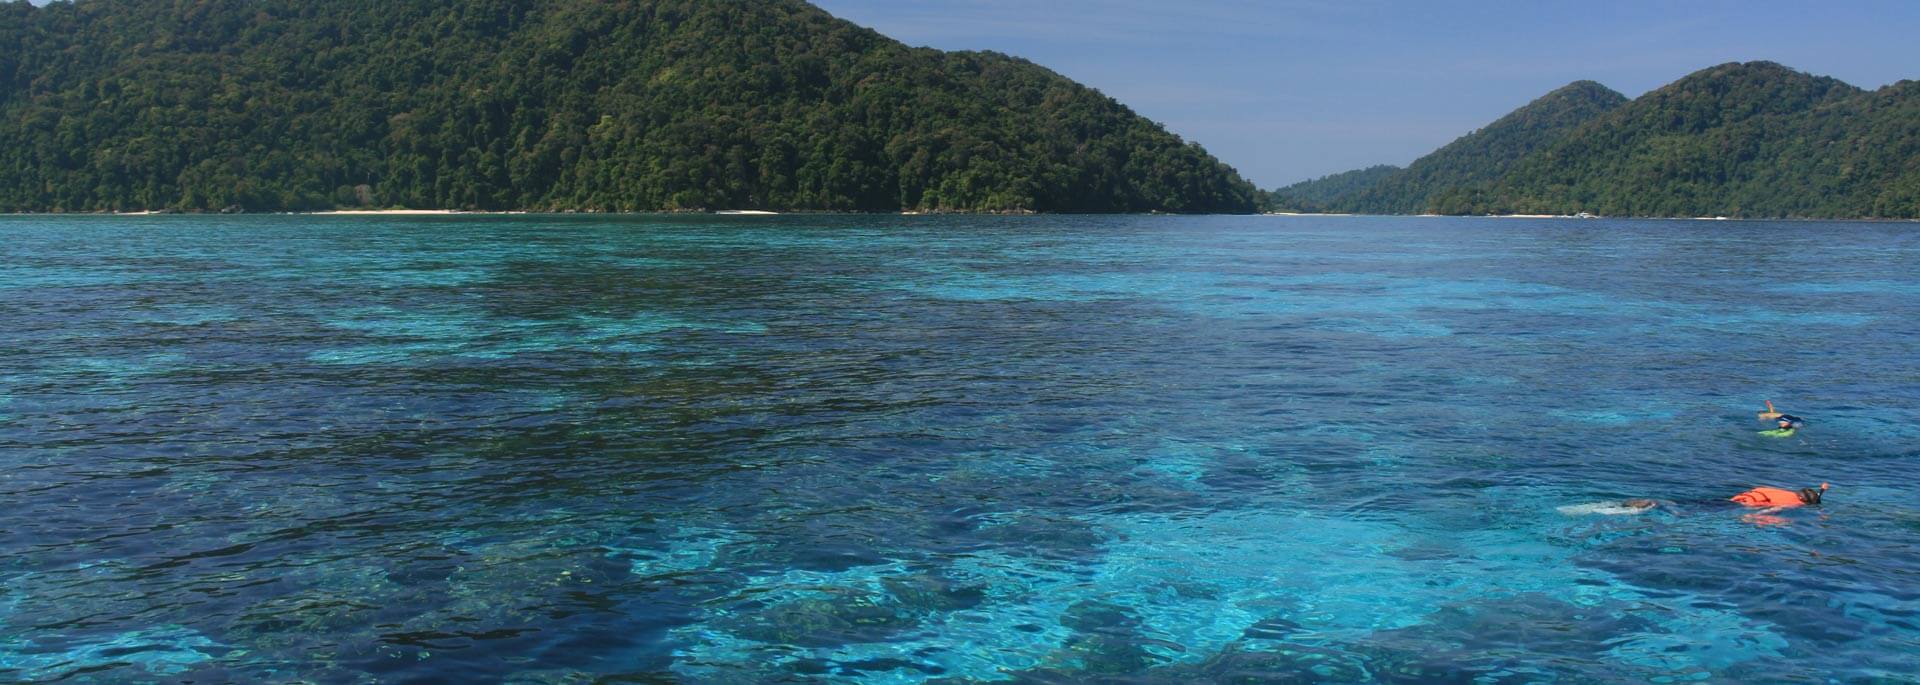 Warum die Surin Inseln und ihre Bewohner lieber ein Geheimtipp bleiben sollten